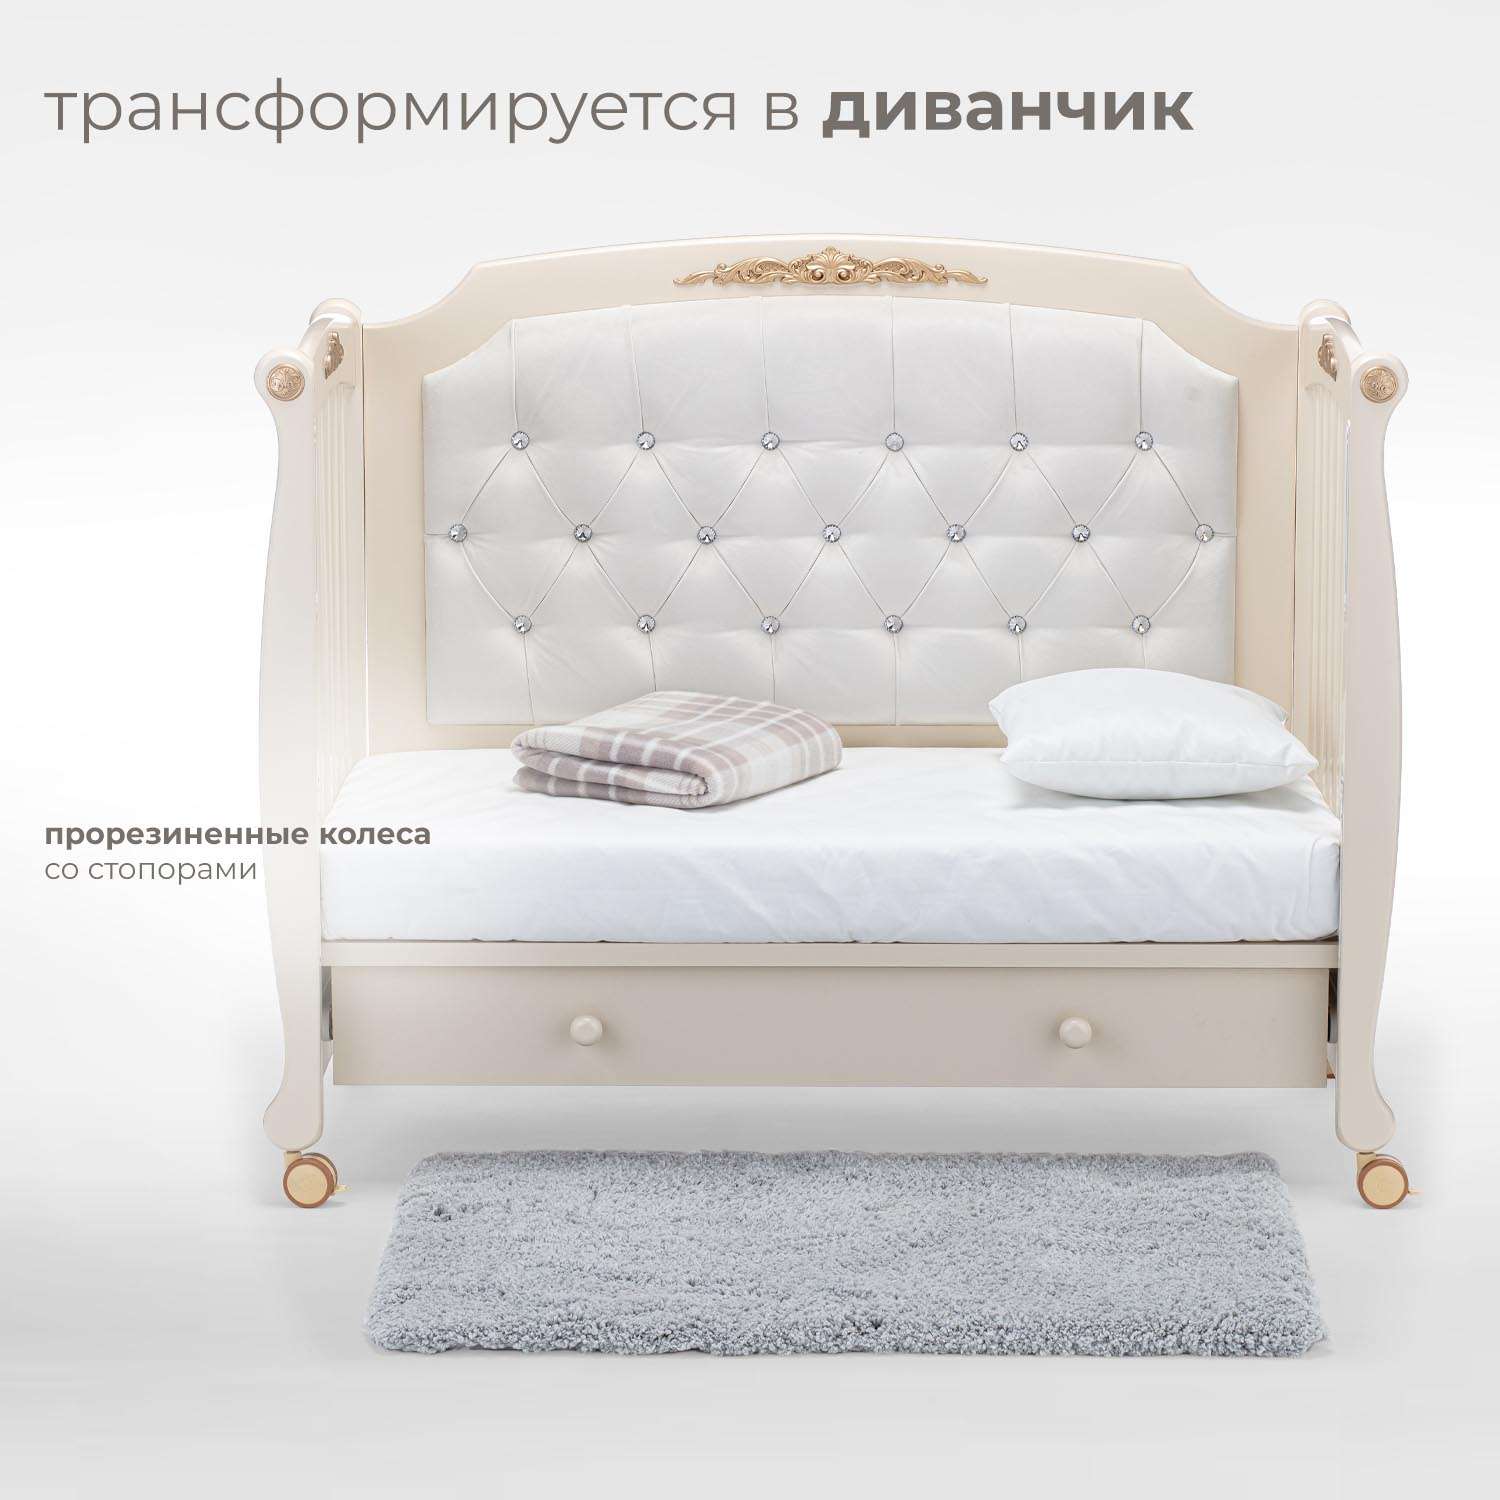 Детская кроватка Nuovita Furore прямоугольная, без маятника (слоновая кость) - фото 4